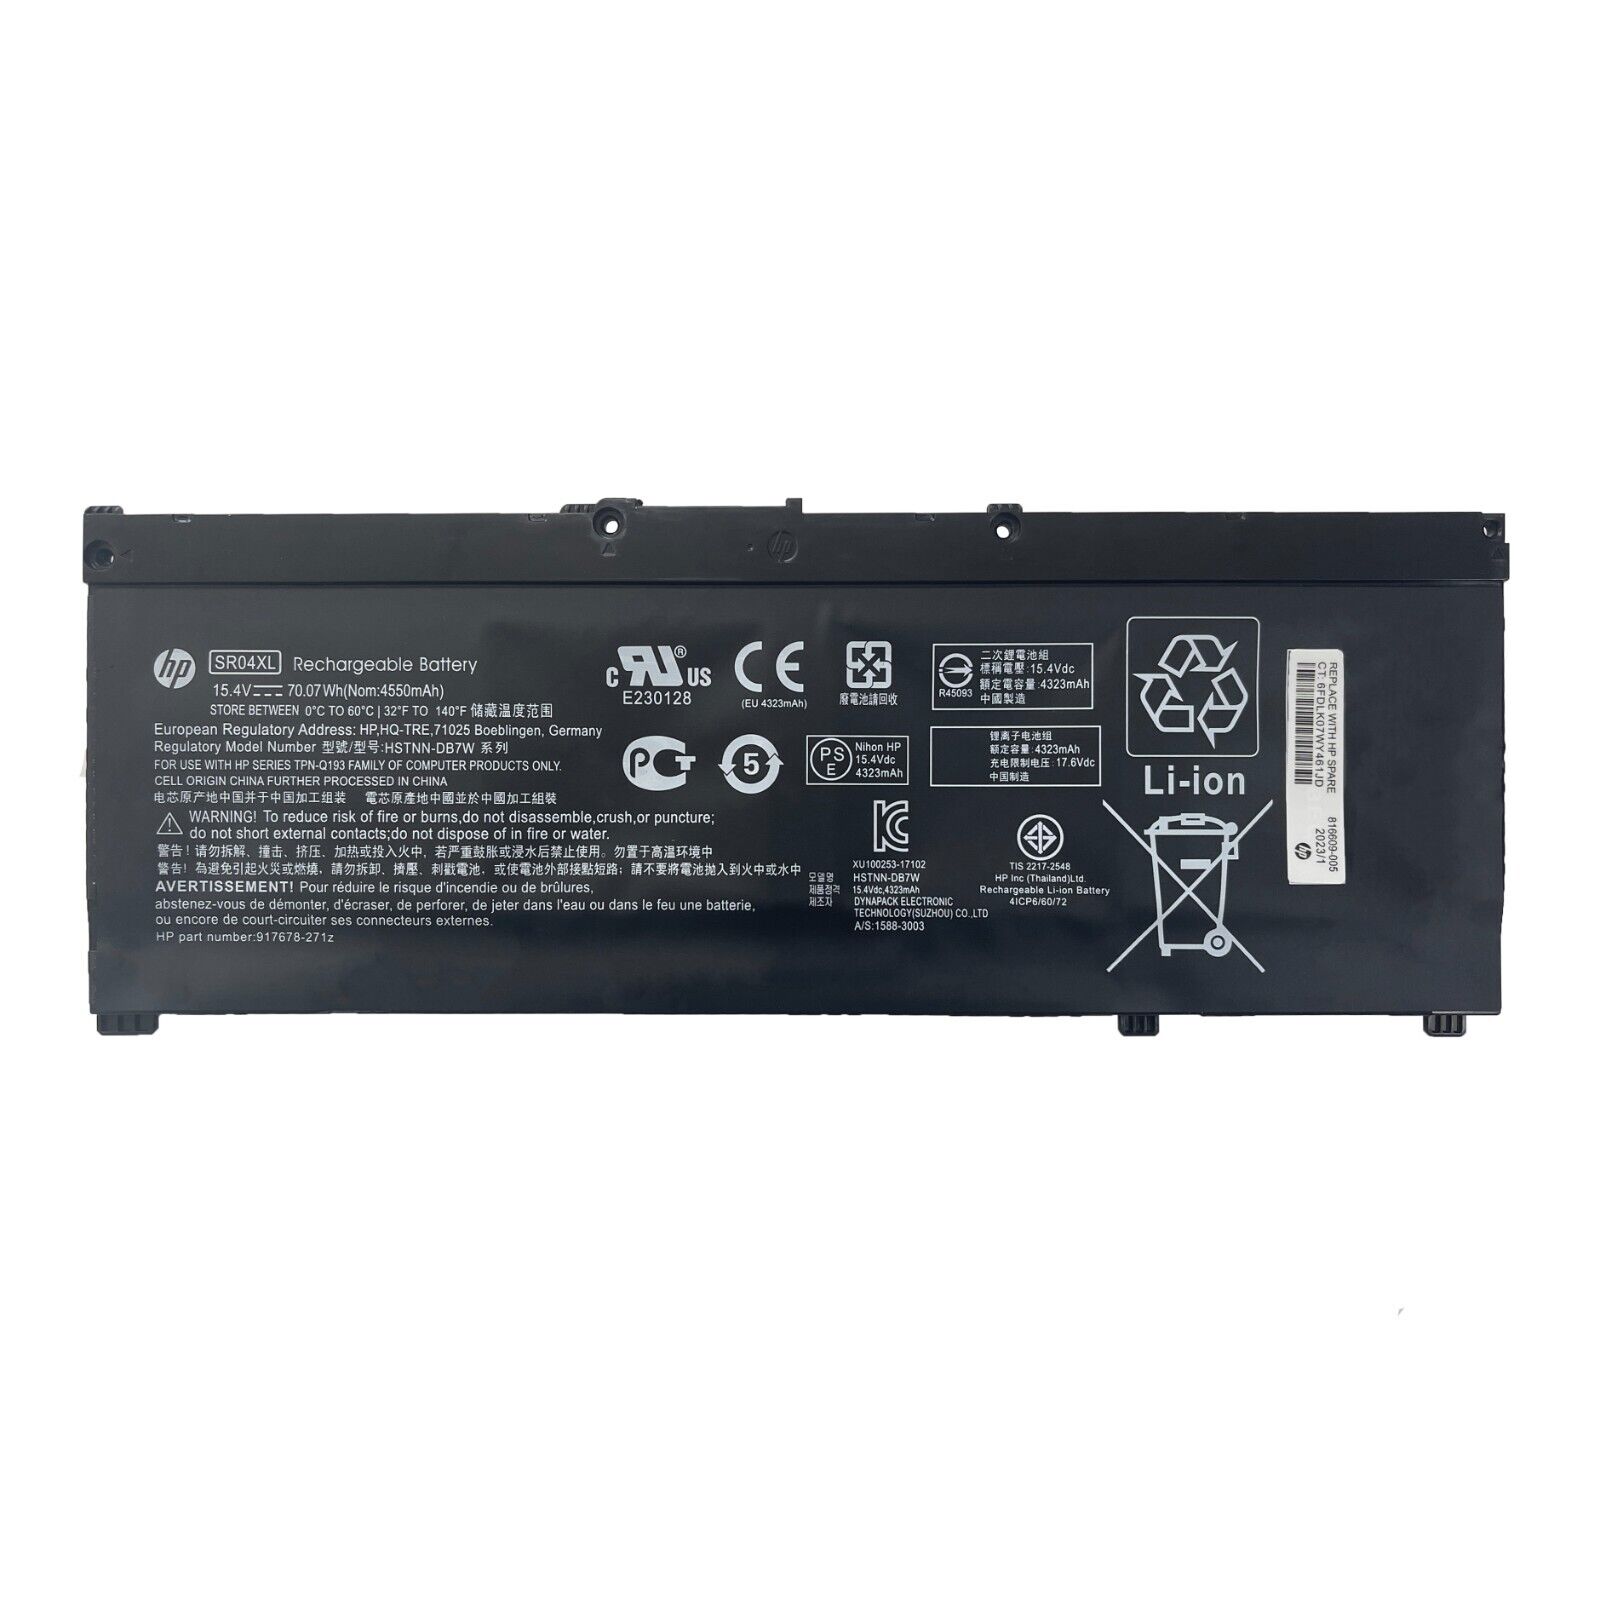 NEW Genuine 70.07Wh SR04XL Battery For HP Omen 15-CE Pavilion 15-cb 917724-855